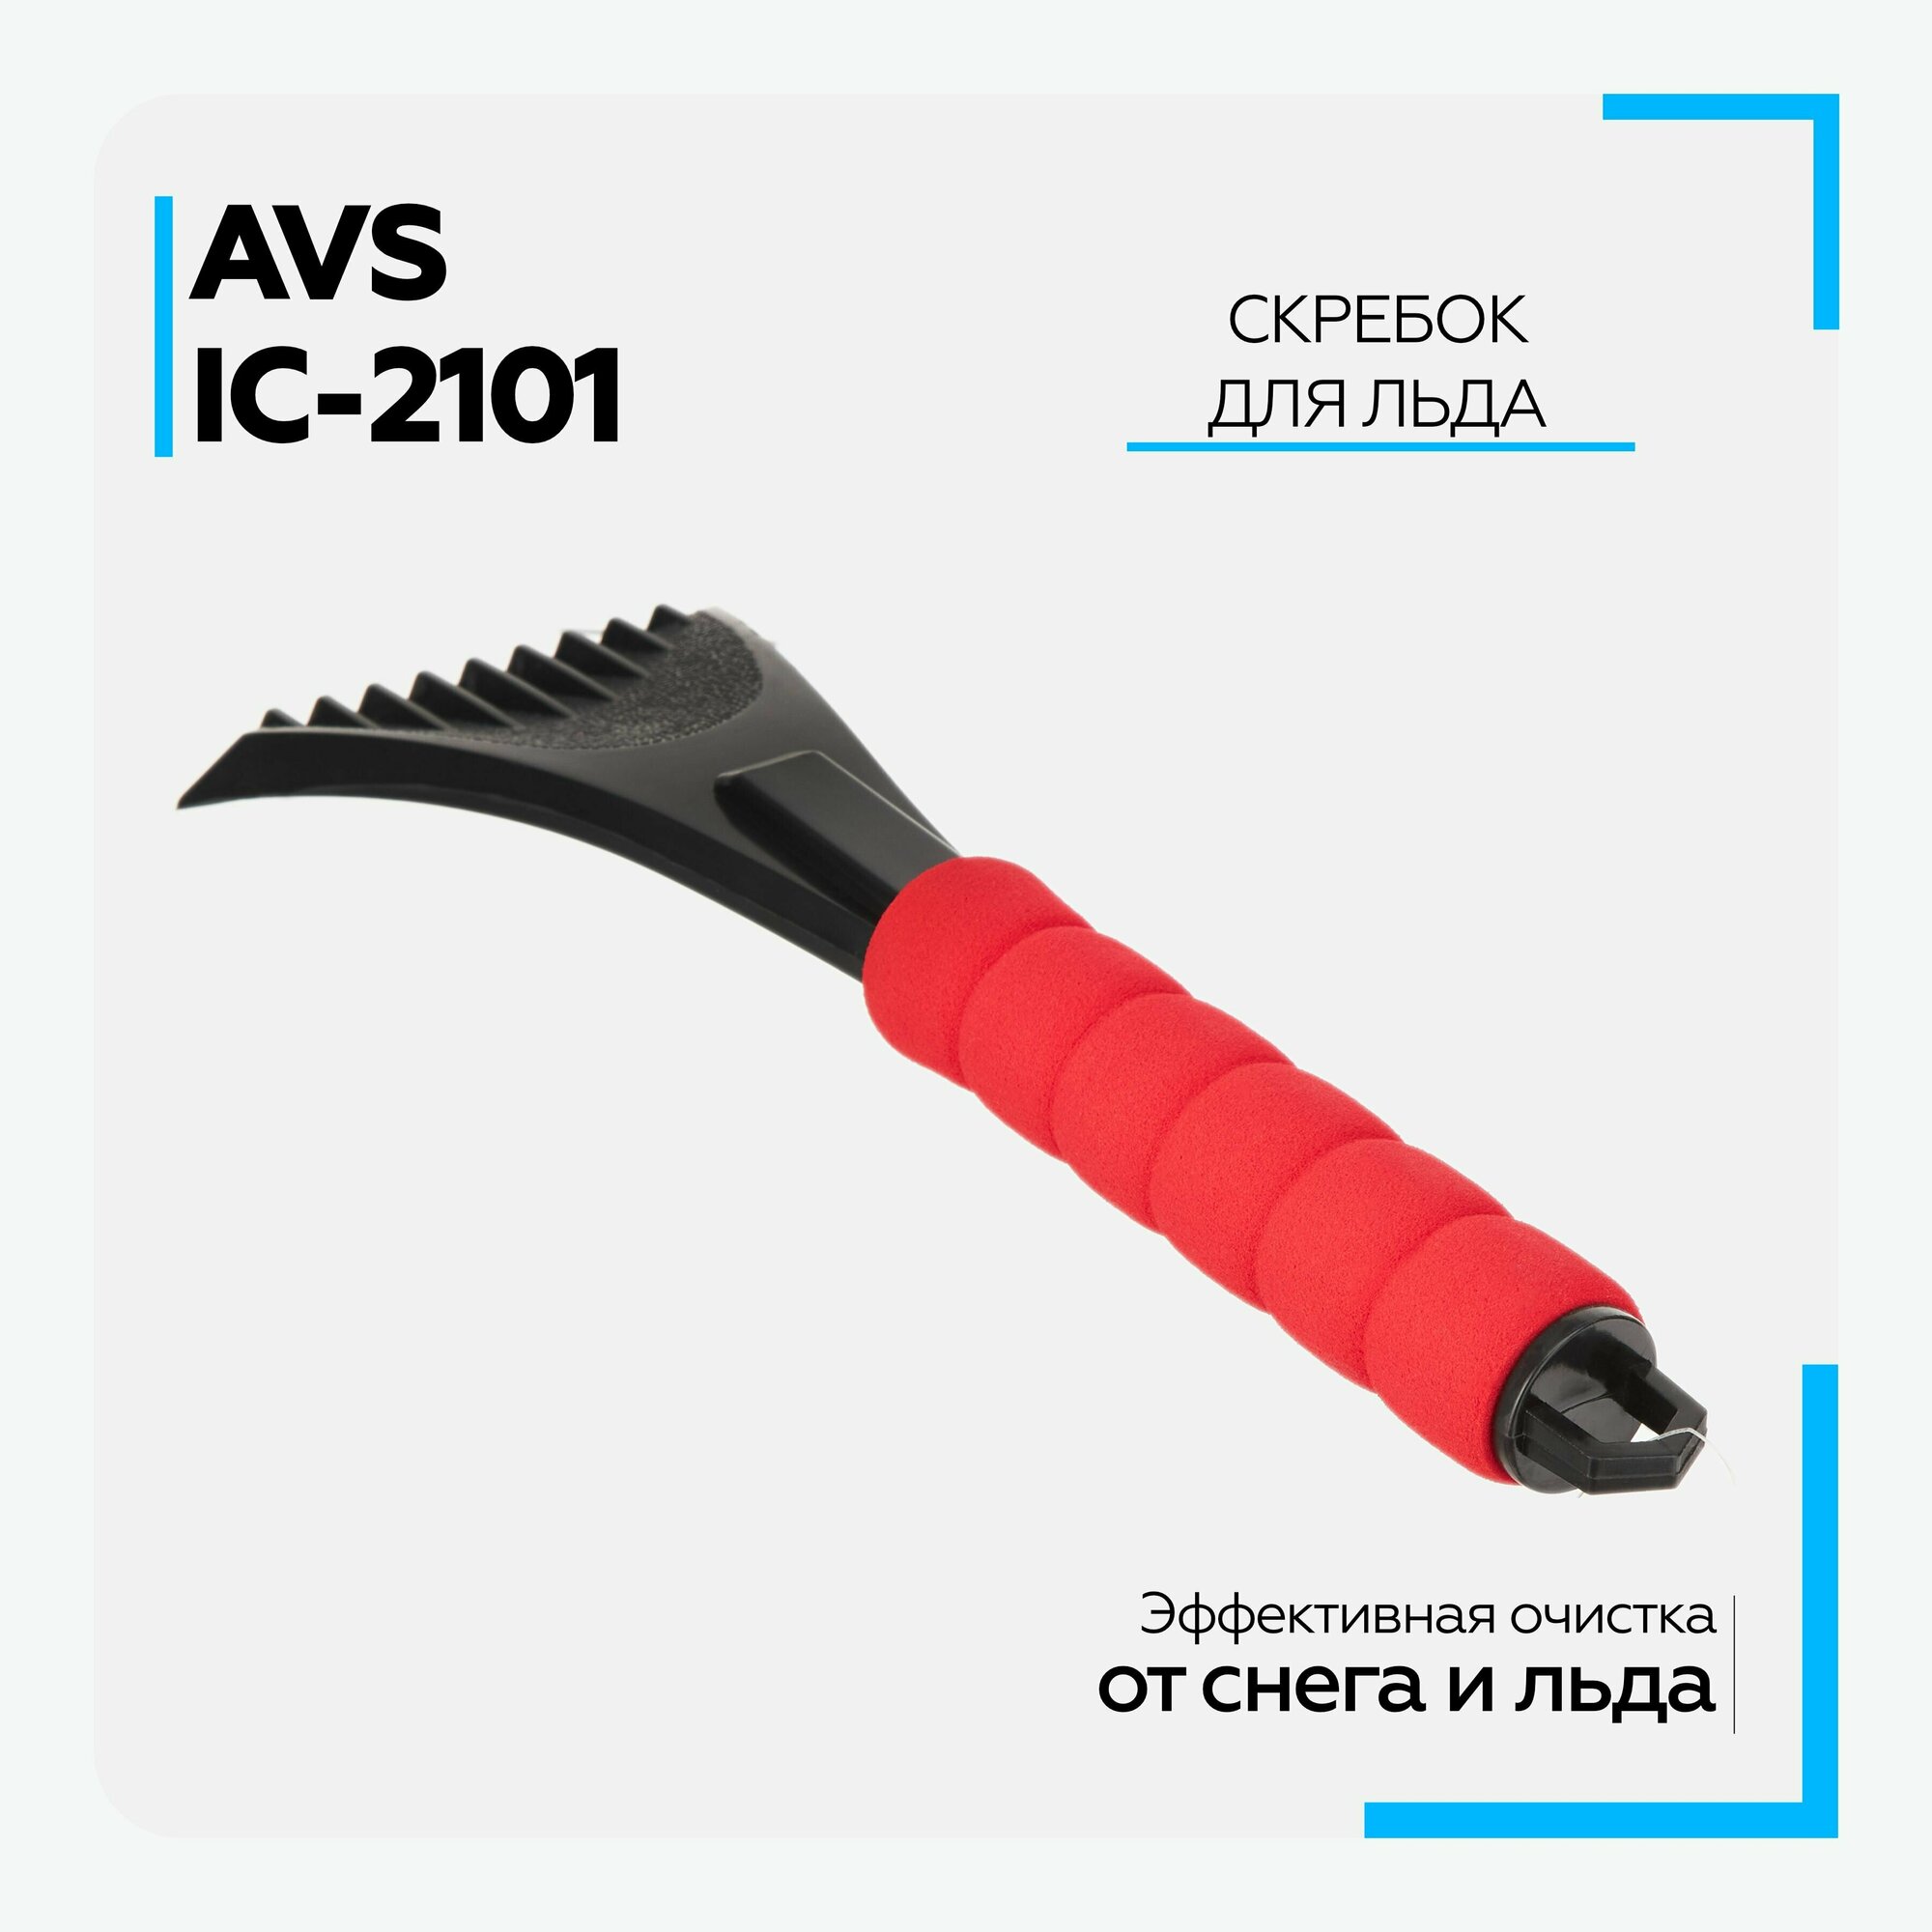 Скребок для льда AVS IC-2101 (31,5 см) мягкая ручка (A80927S)